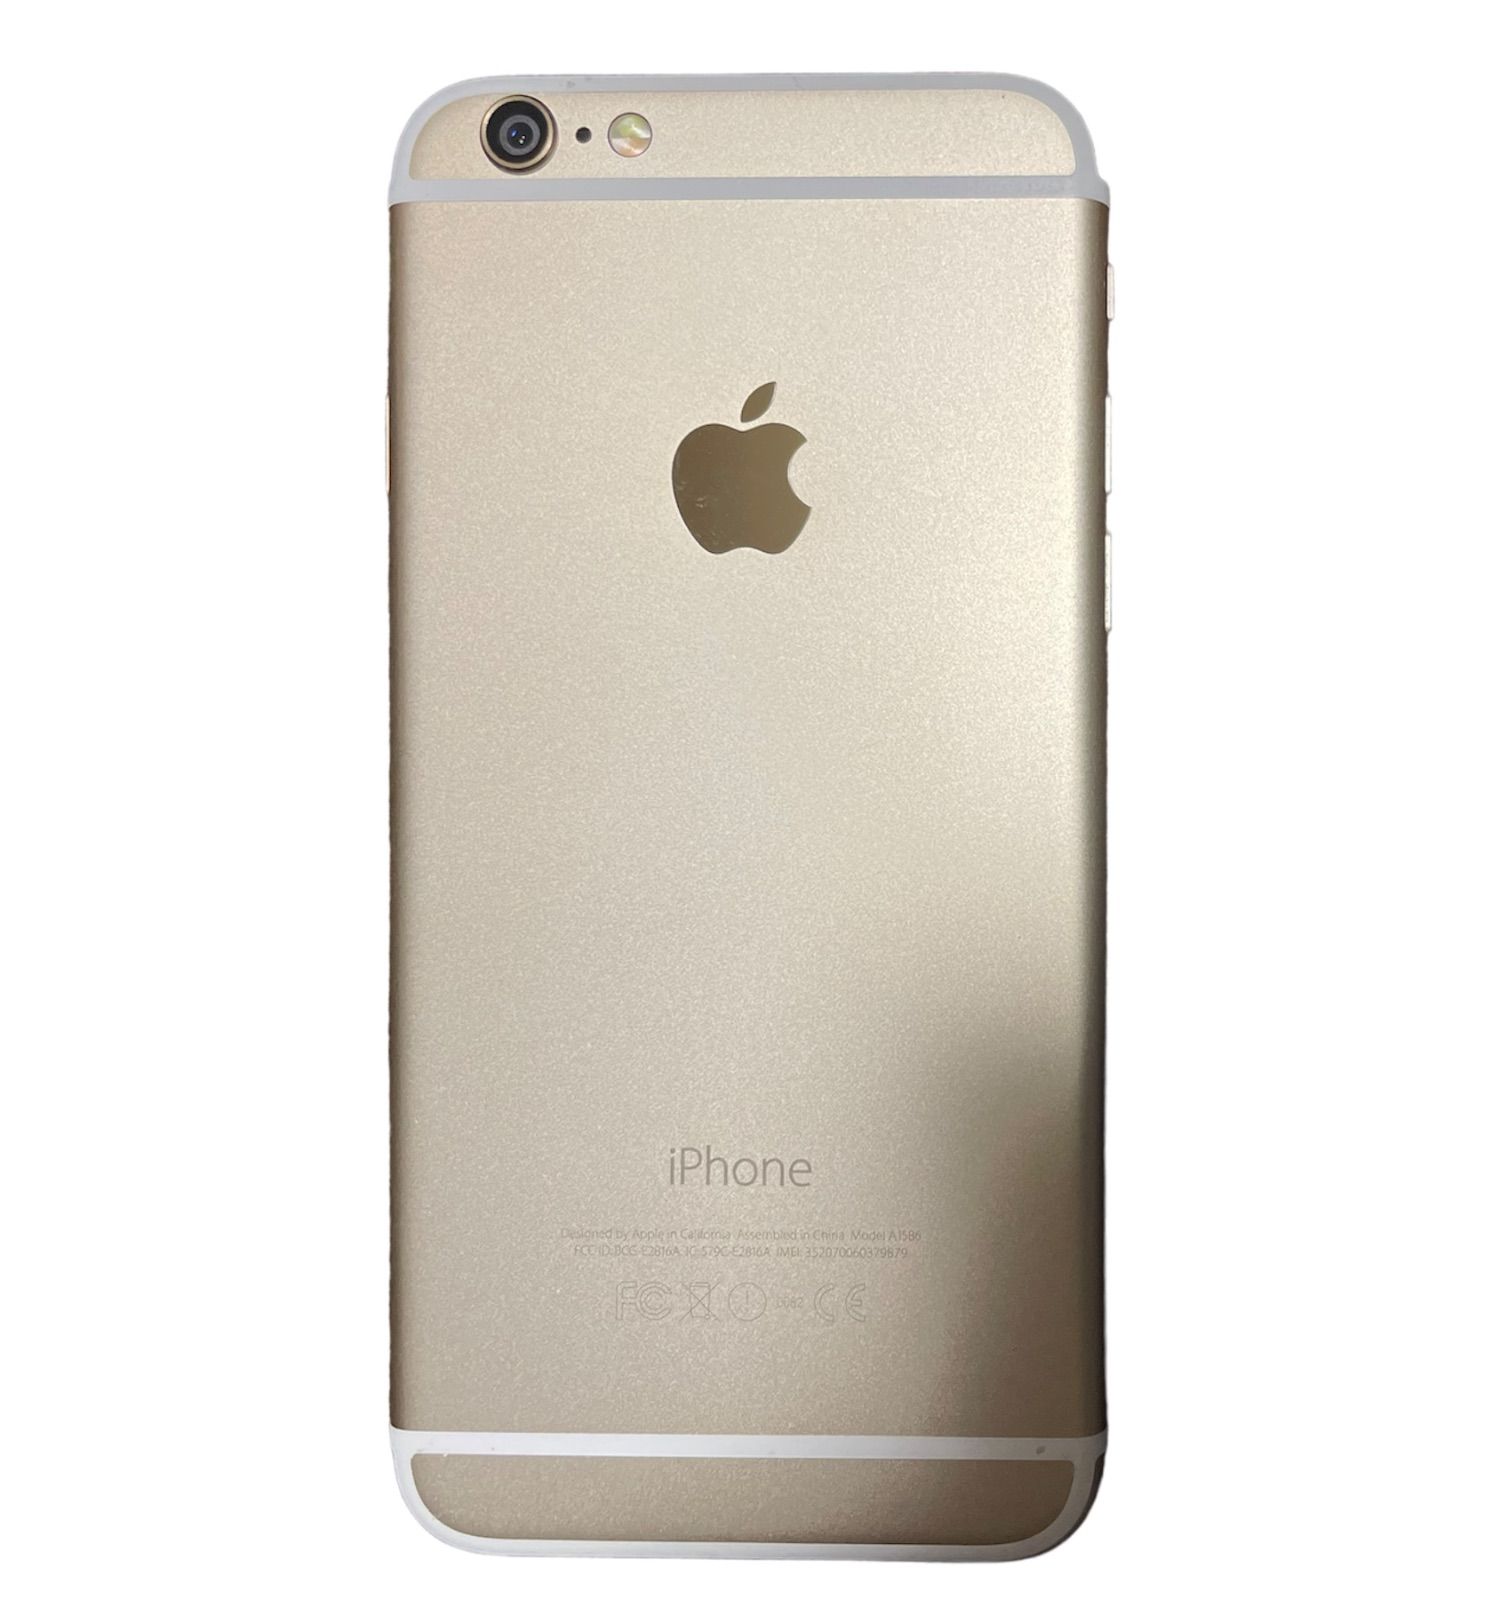 iPhone6 GOLD 64GB SIMロックあり( au ) ネットワーク利用制限◯ 初期